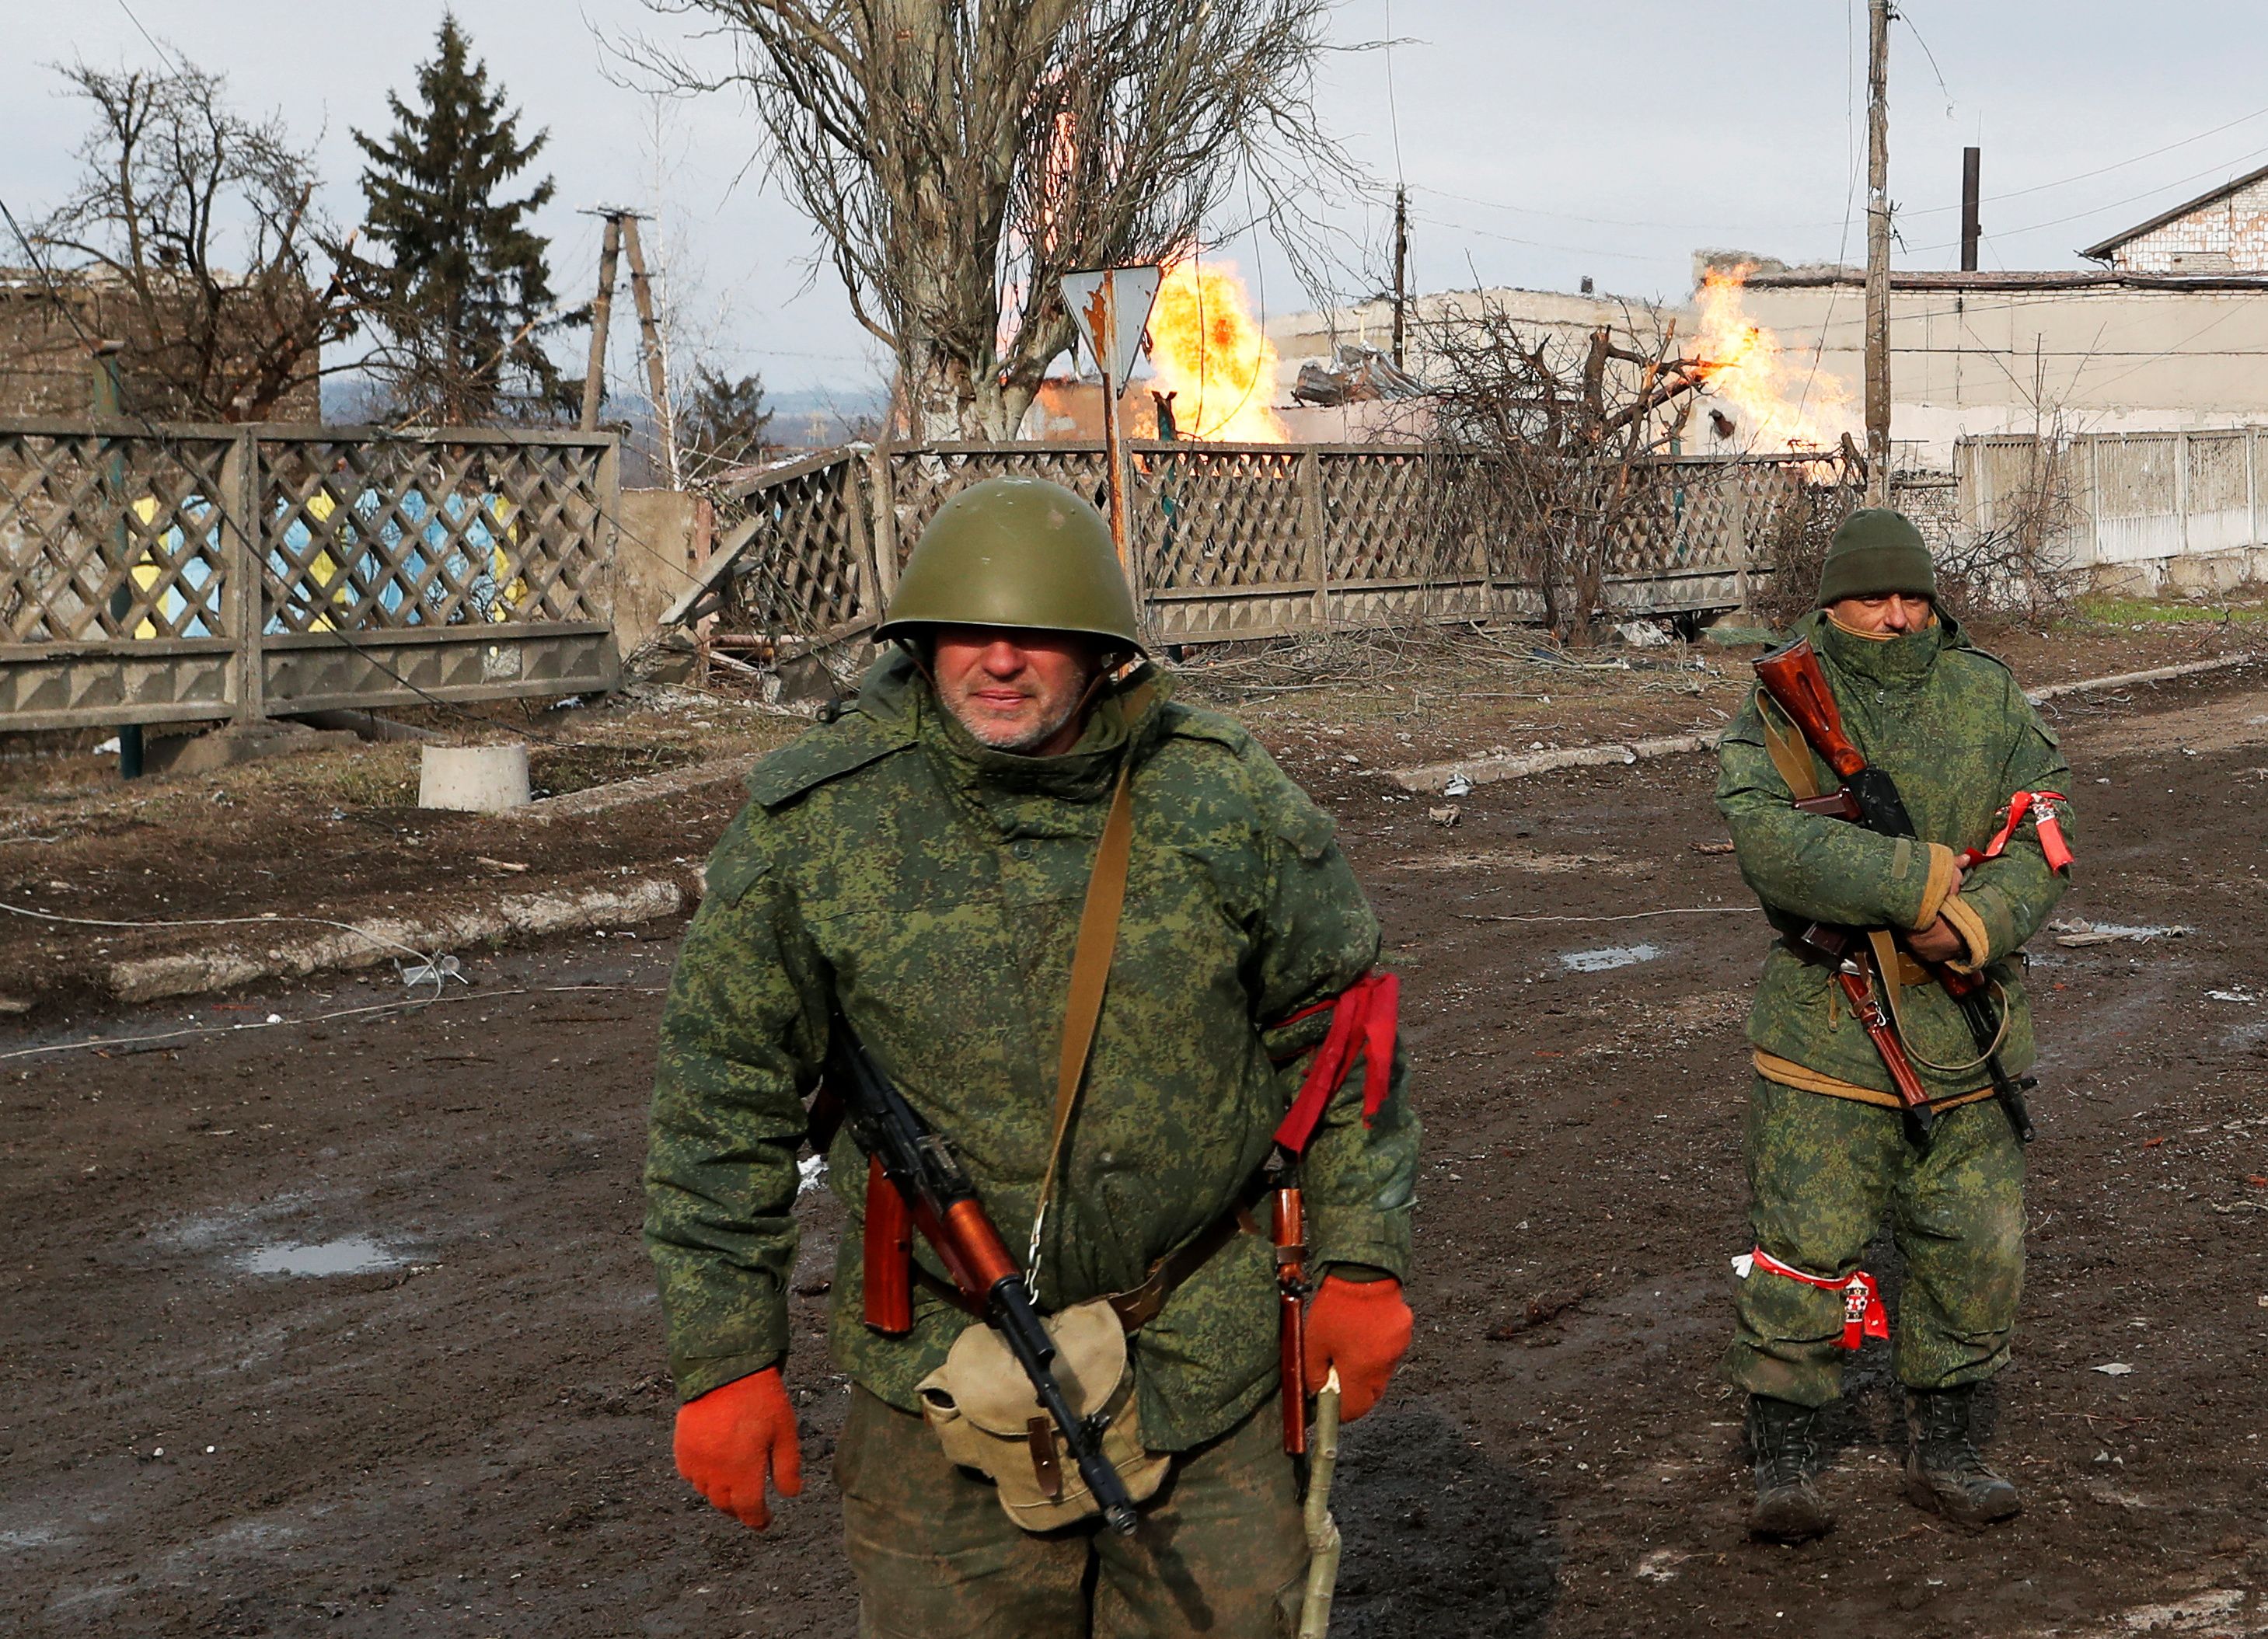 Agentes de las tropas prorrusas con uniformes sin insignias se ven en una calle de la ciudad de Volnovakha, controlada por los separatistas en la región de Donetsk, Ucrania, el 11 de marzo de 2022 (REUTERS/Alexander Ermochenko)